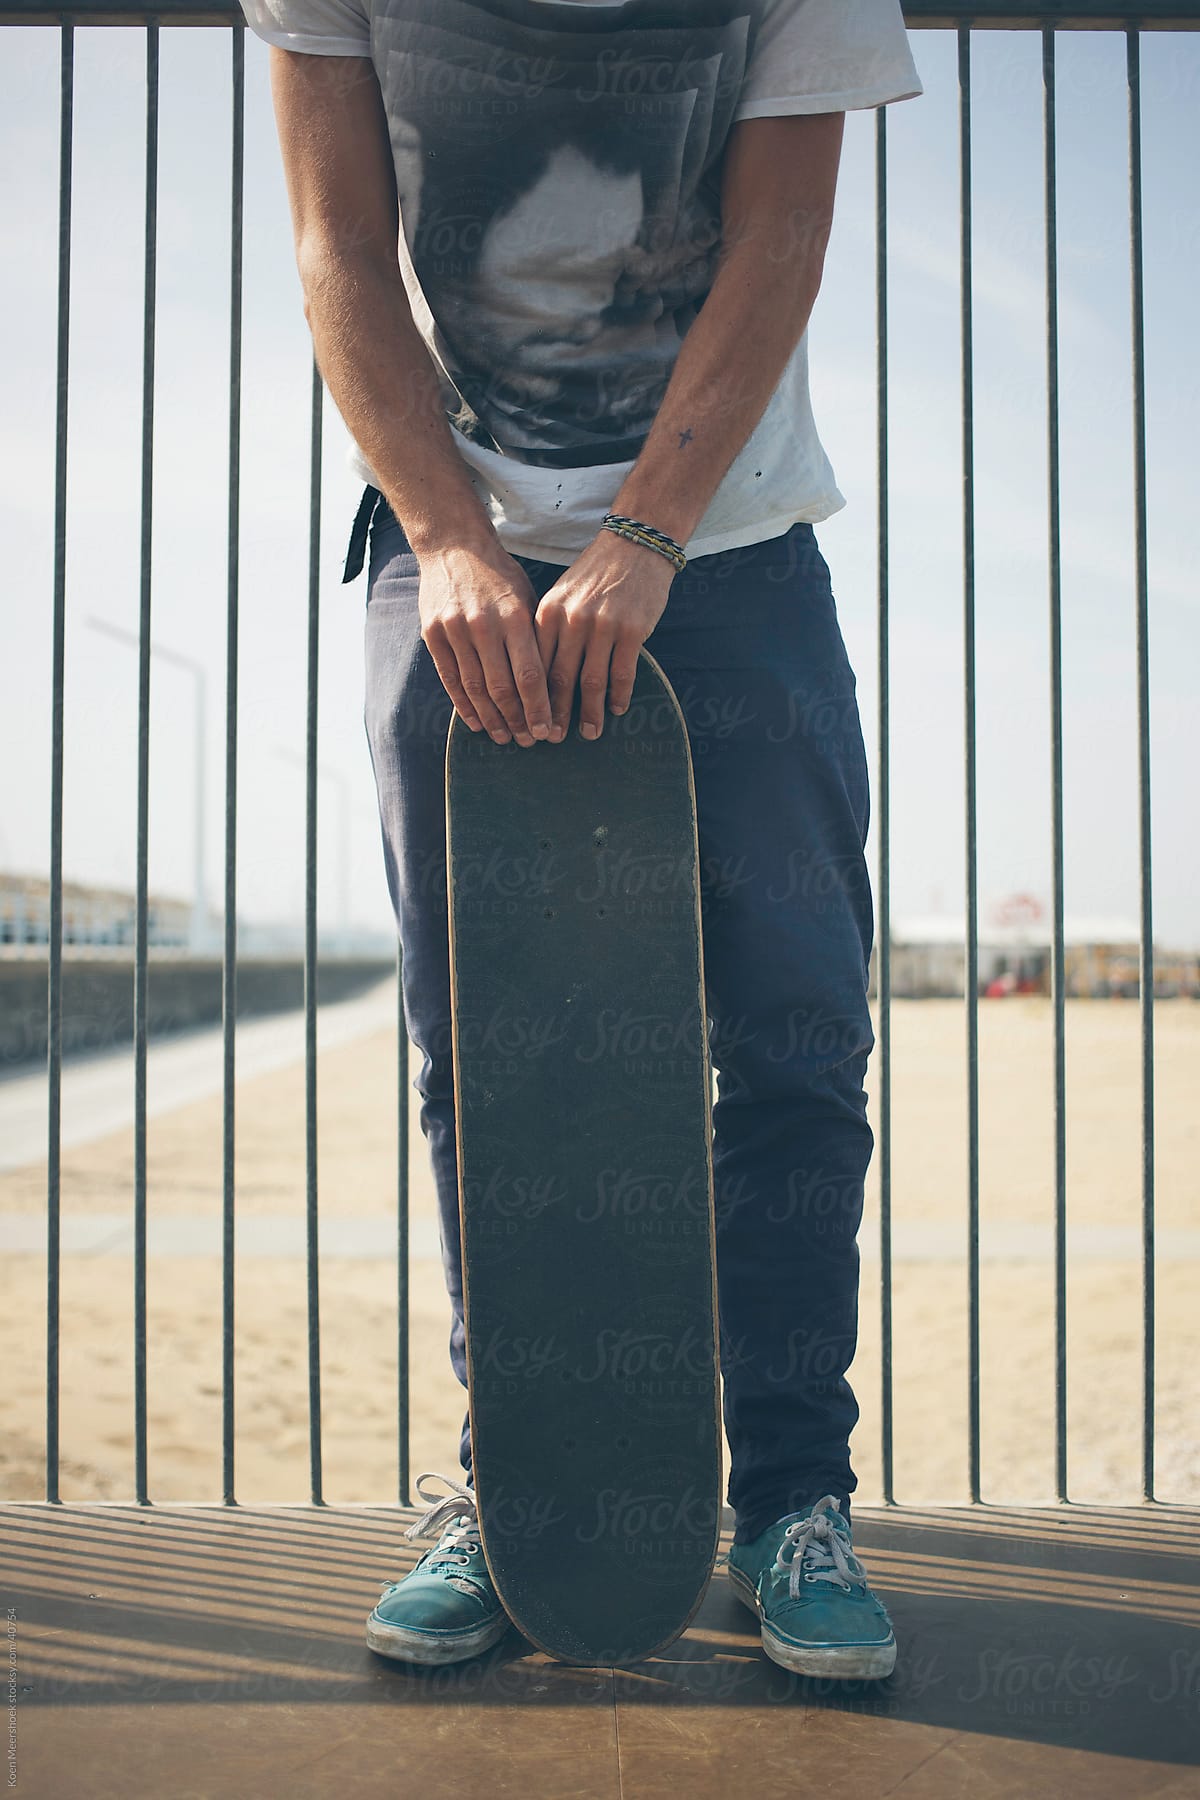 Skater holding his skateboard